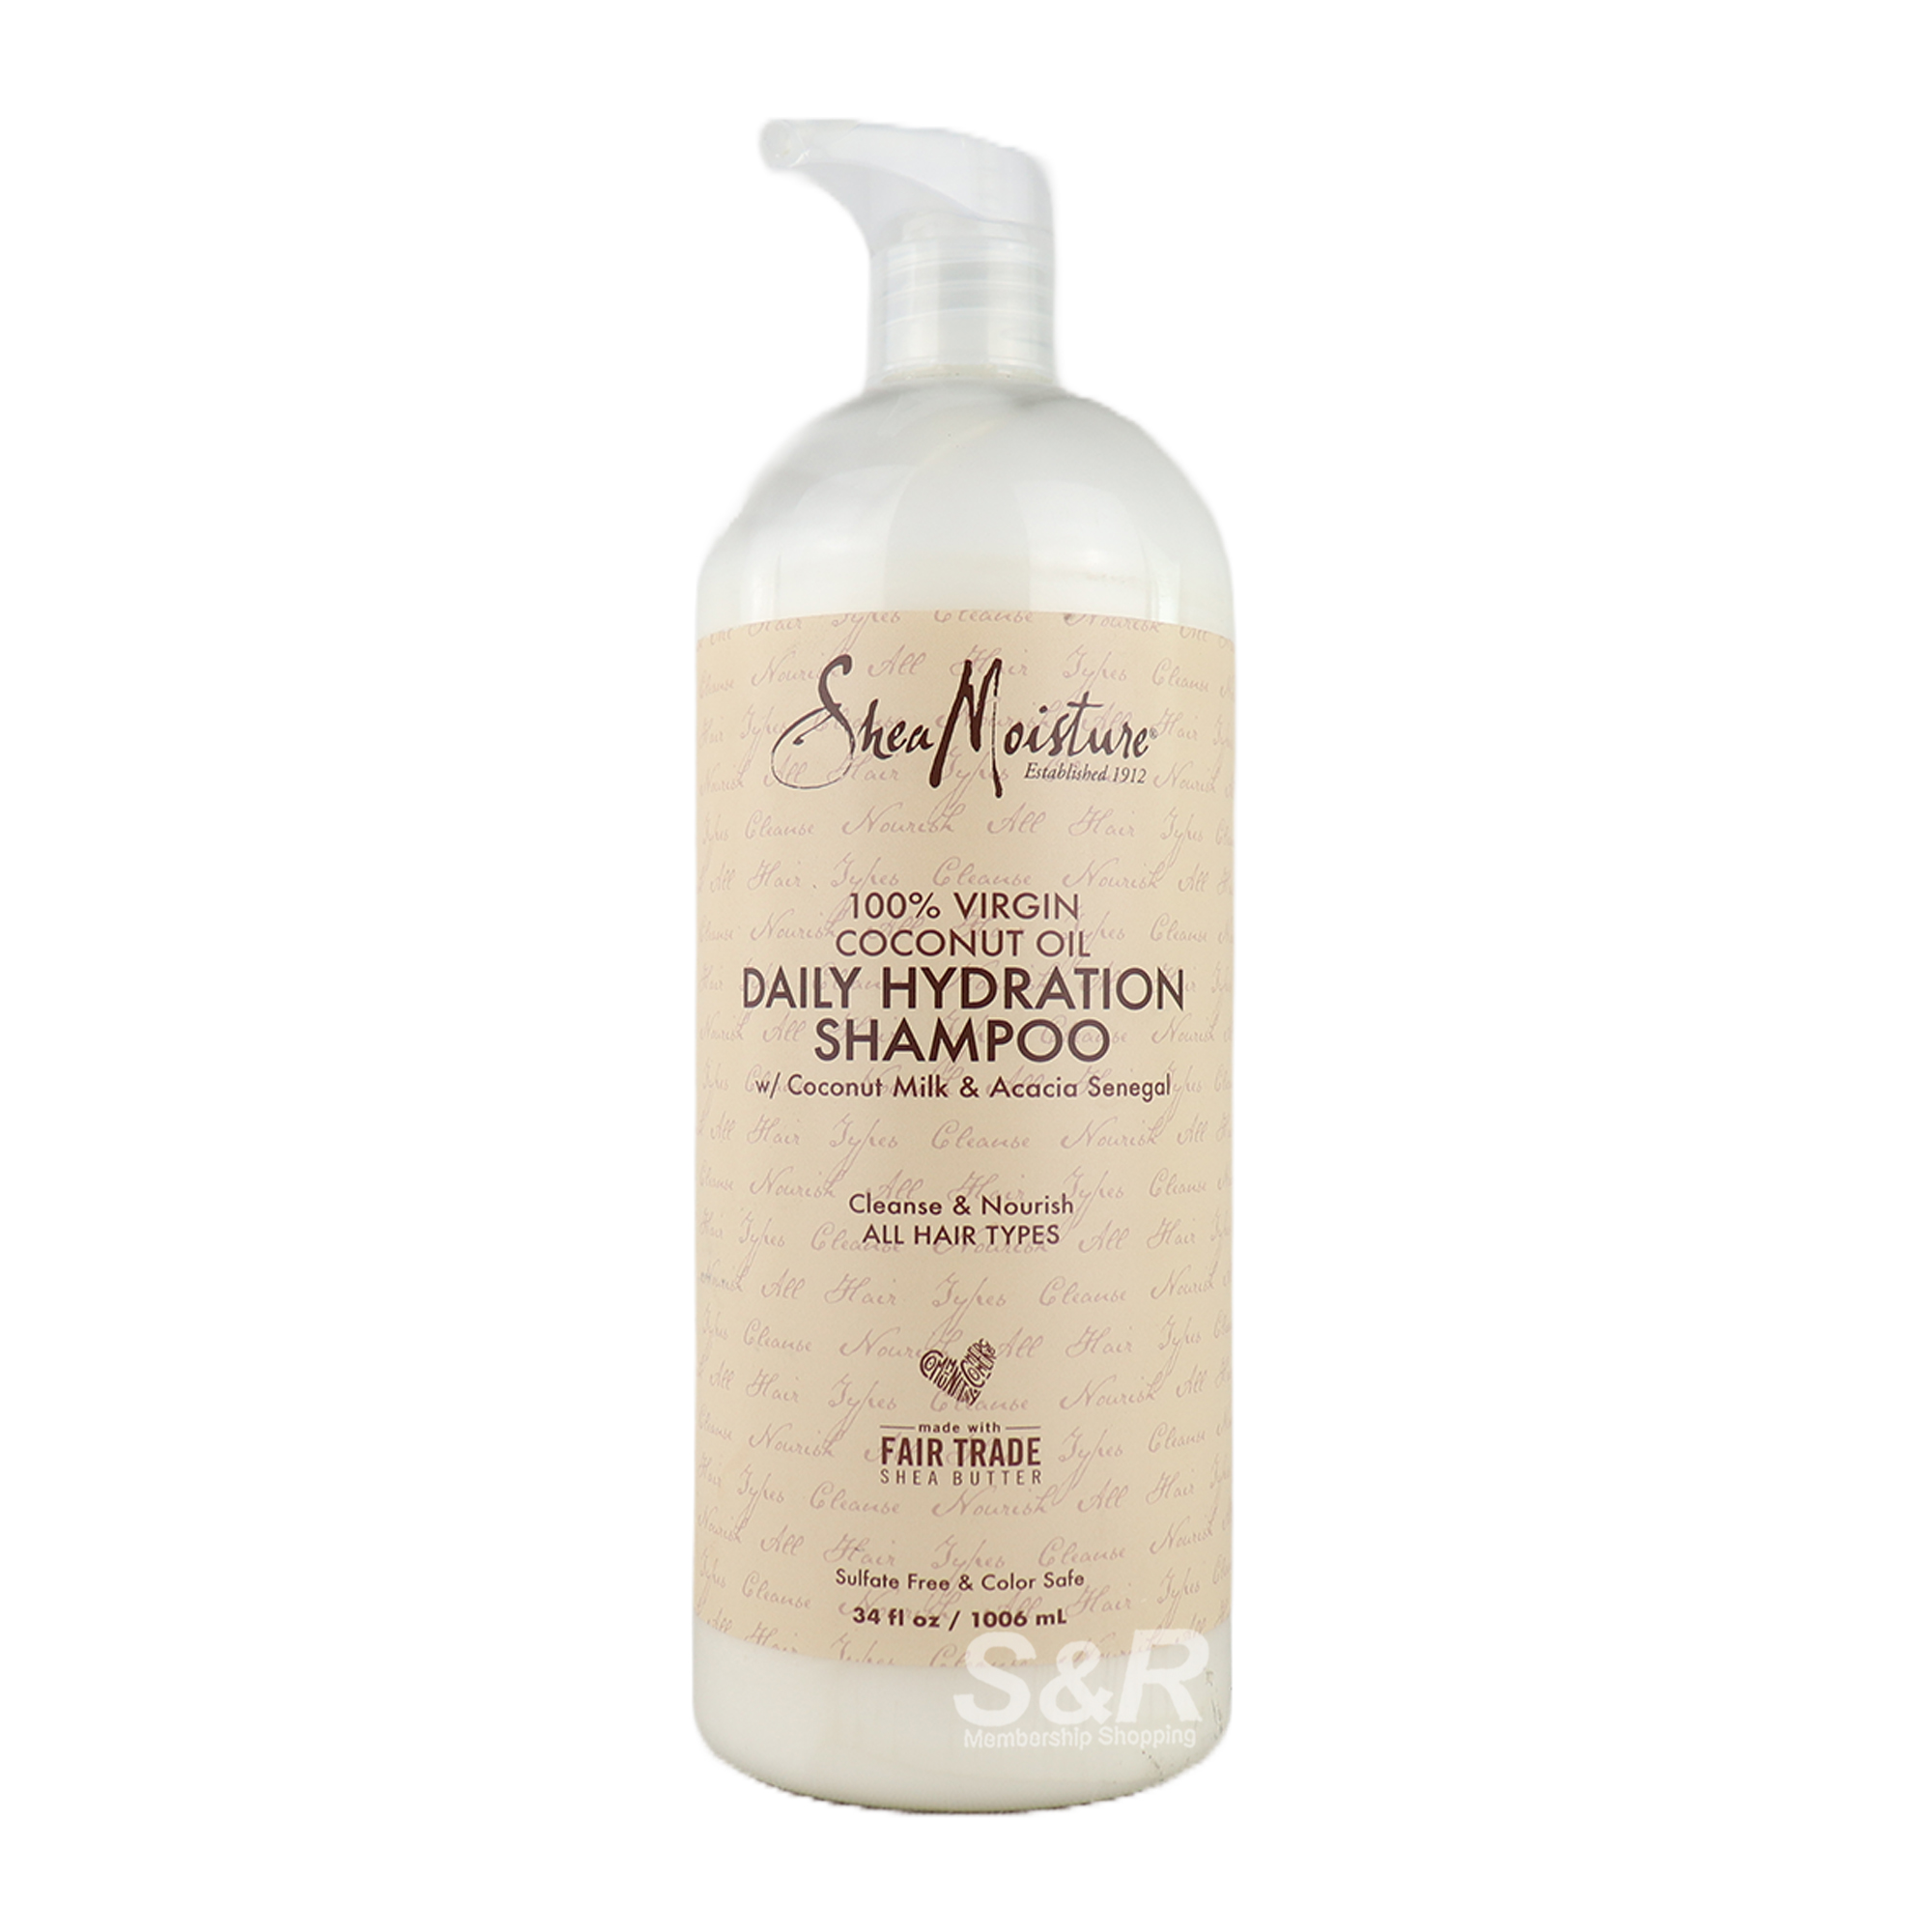 Shea Moisture Daily Hydration Shampoo 1006mL